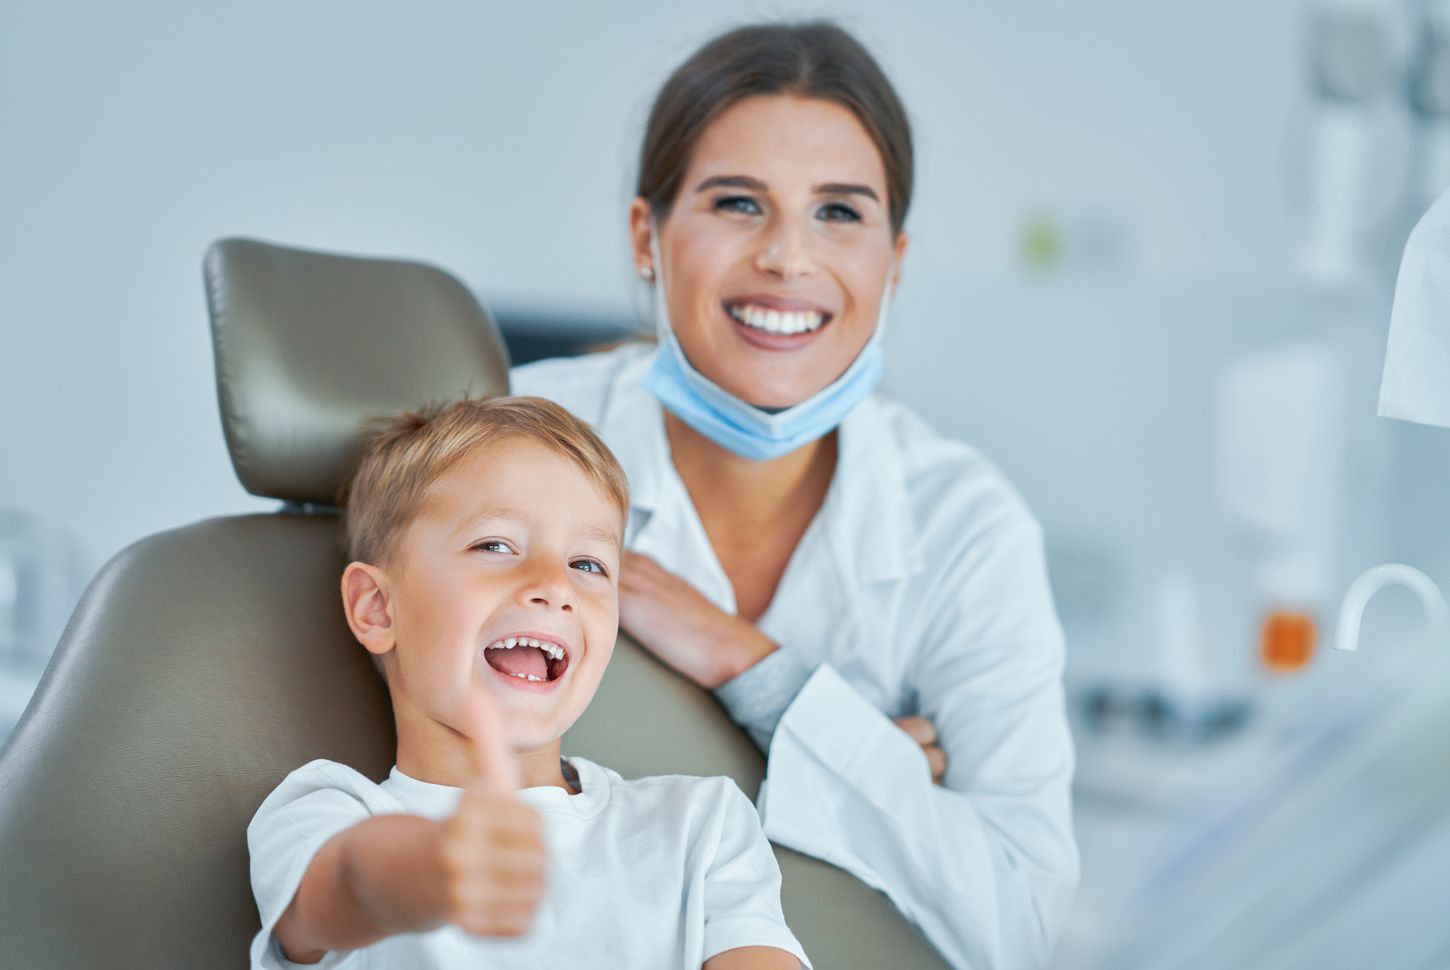 ¡Cuida la sonrisa de tus hijos! Consejos de odontopediatría para padres